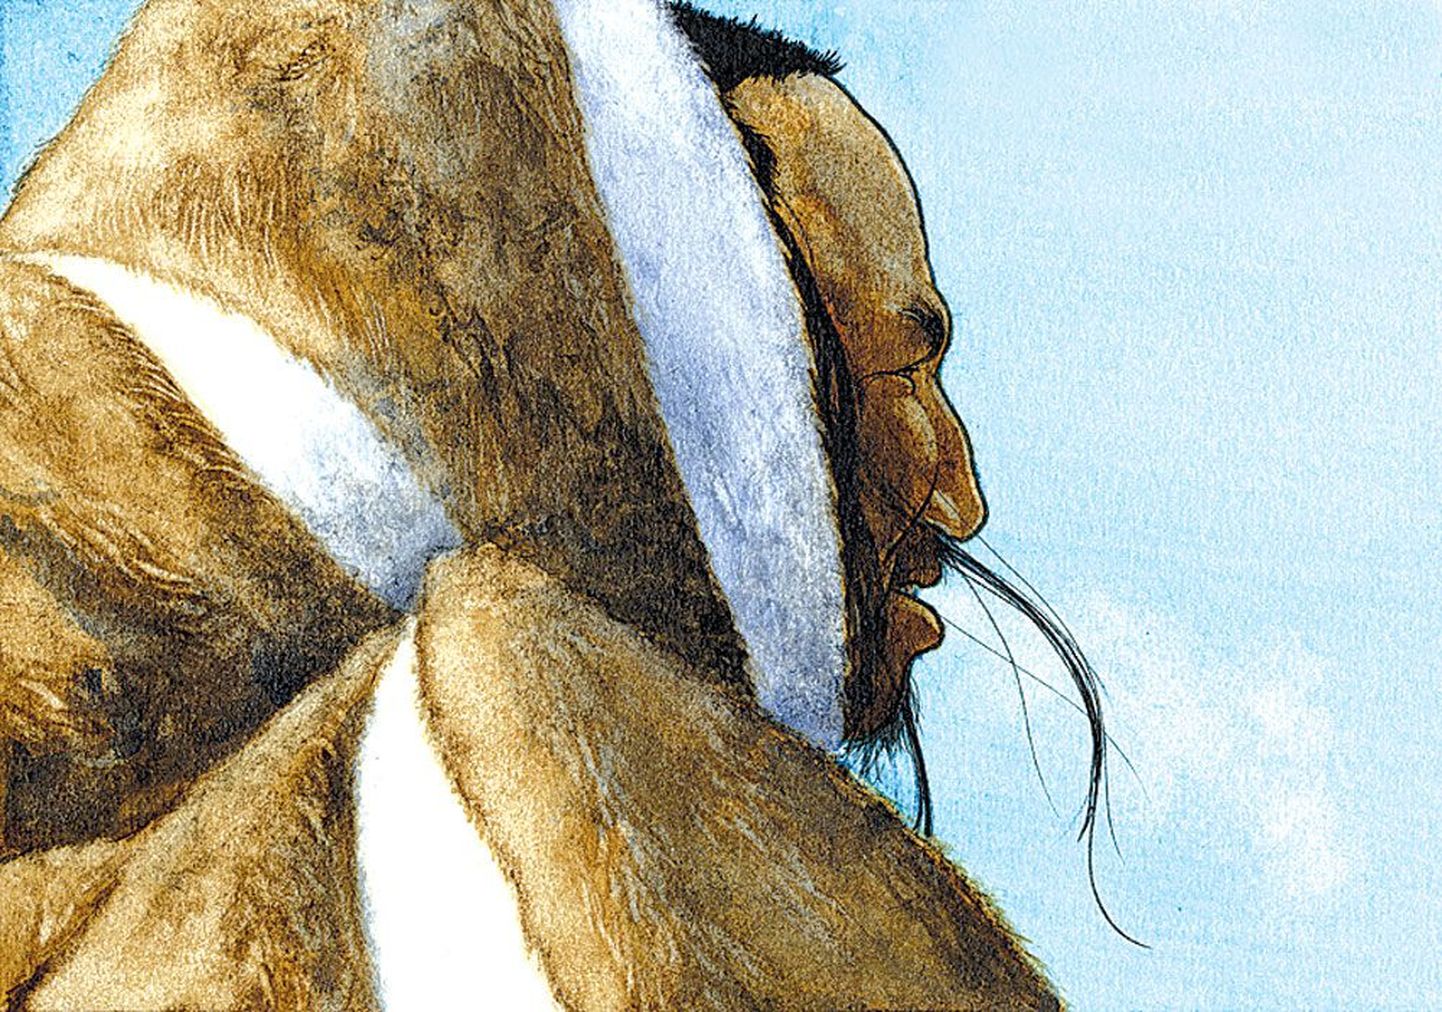 Nuna K. Gotfredseni joonistus 4000 aastat tagasi Gröönimaal elanud Saqqaqi hõimu mehest.